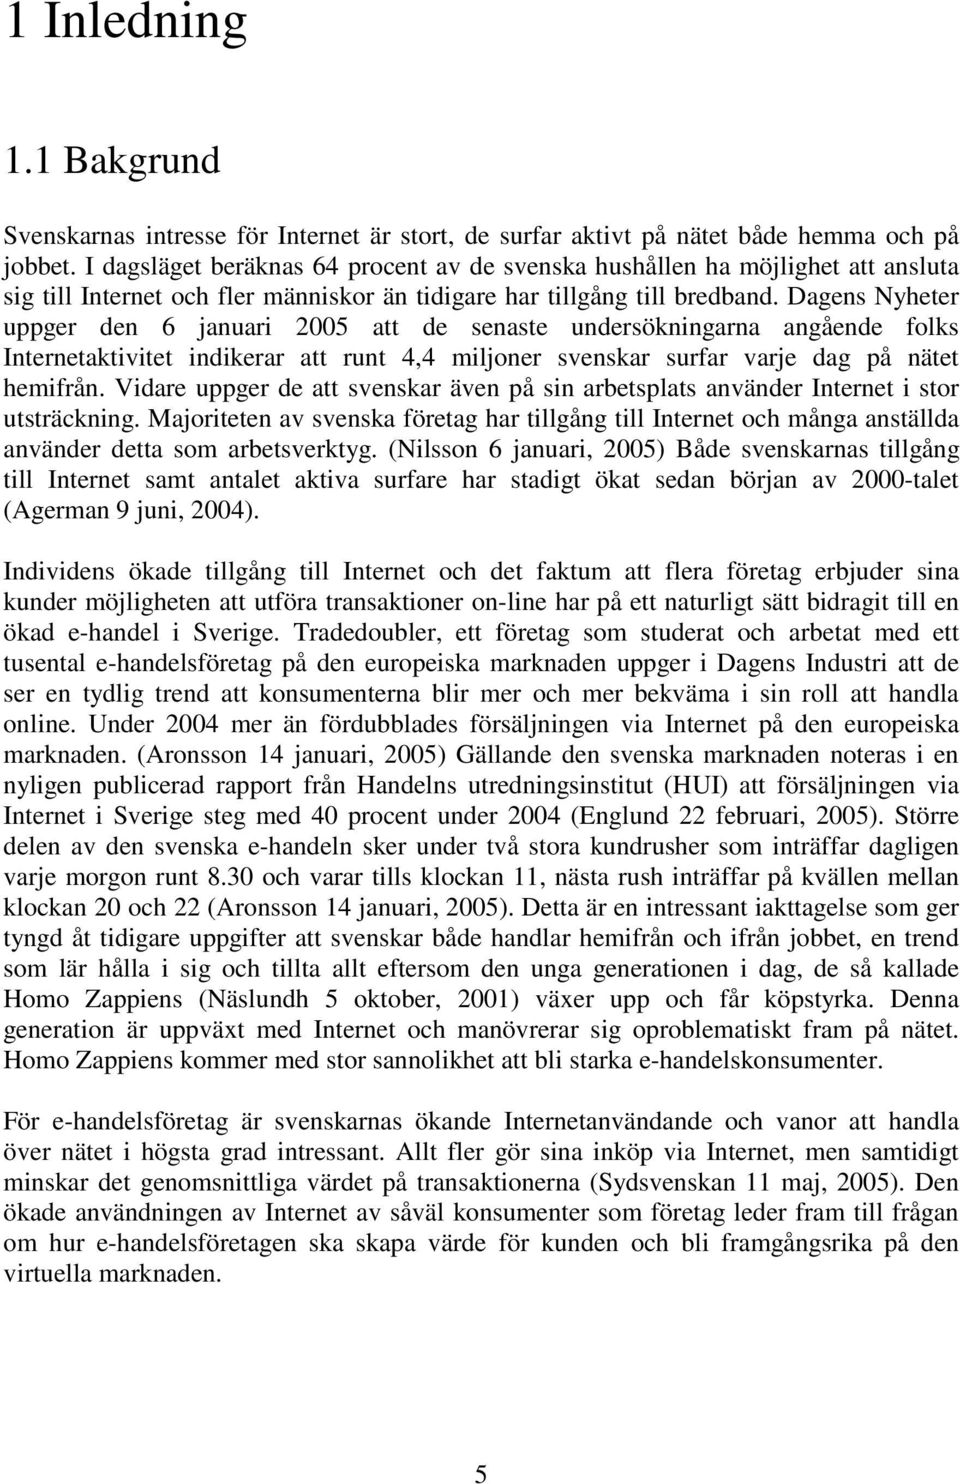 Dagens Nyheter uppger den 6 januari 2005 att de senaste undersökningarna angående folks Internetaktivitet indikerar att runt 4,4 miljoner svenskar surfar varje dag på nätet hemifrån.